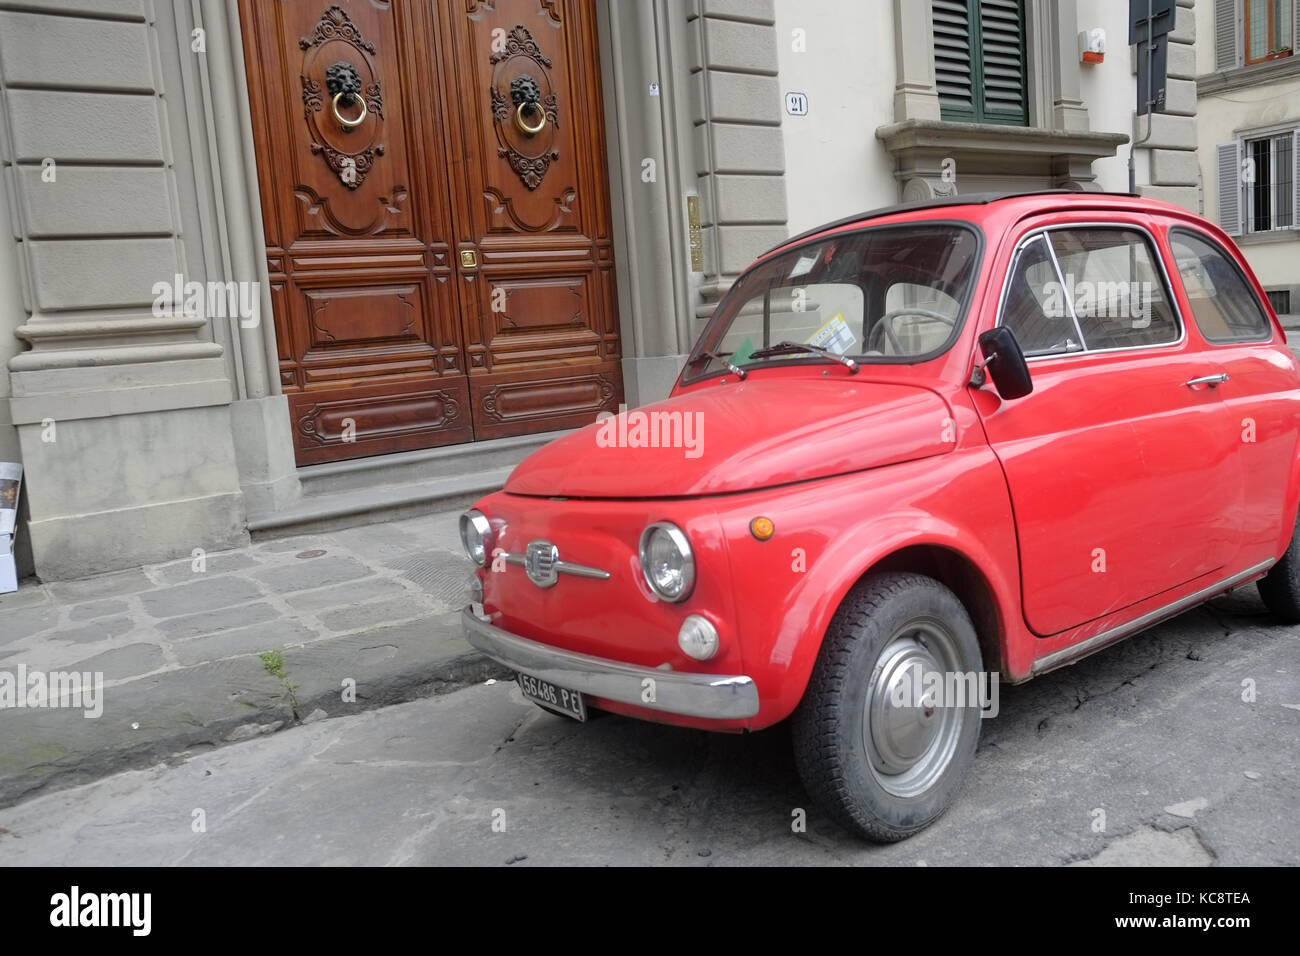 Rot Fiat 500 auf der Straße vor einem alten braun Holz Eingang geparkt. Classic vintage Modell. Florenz, Italien Stockfoto